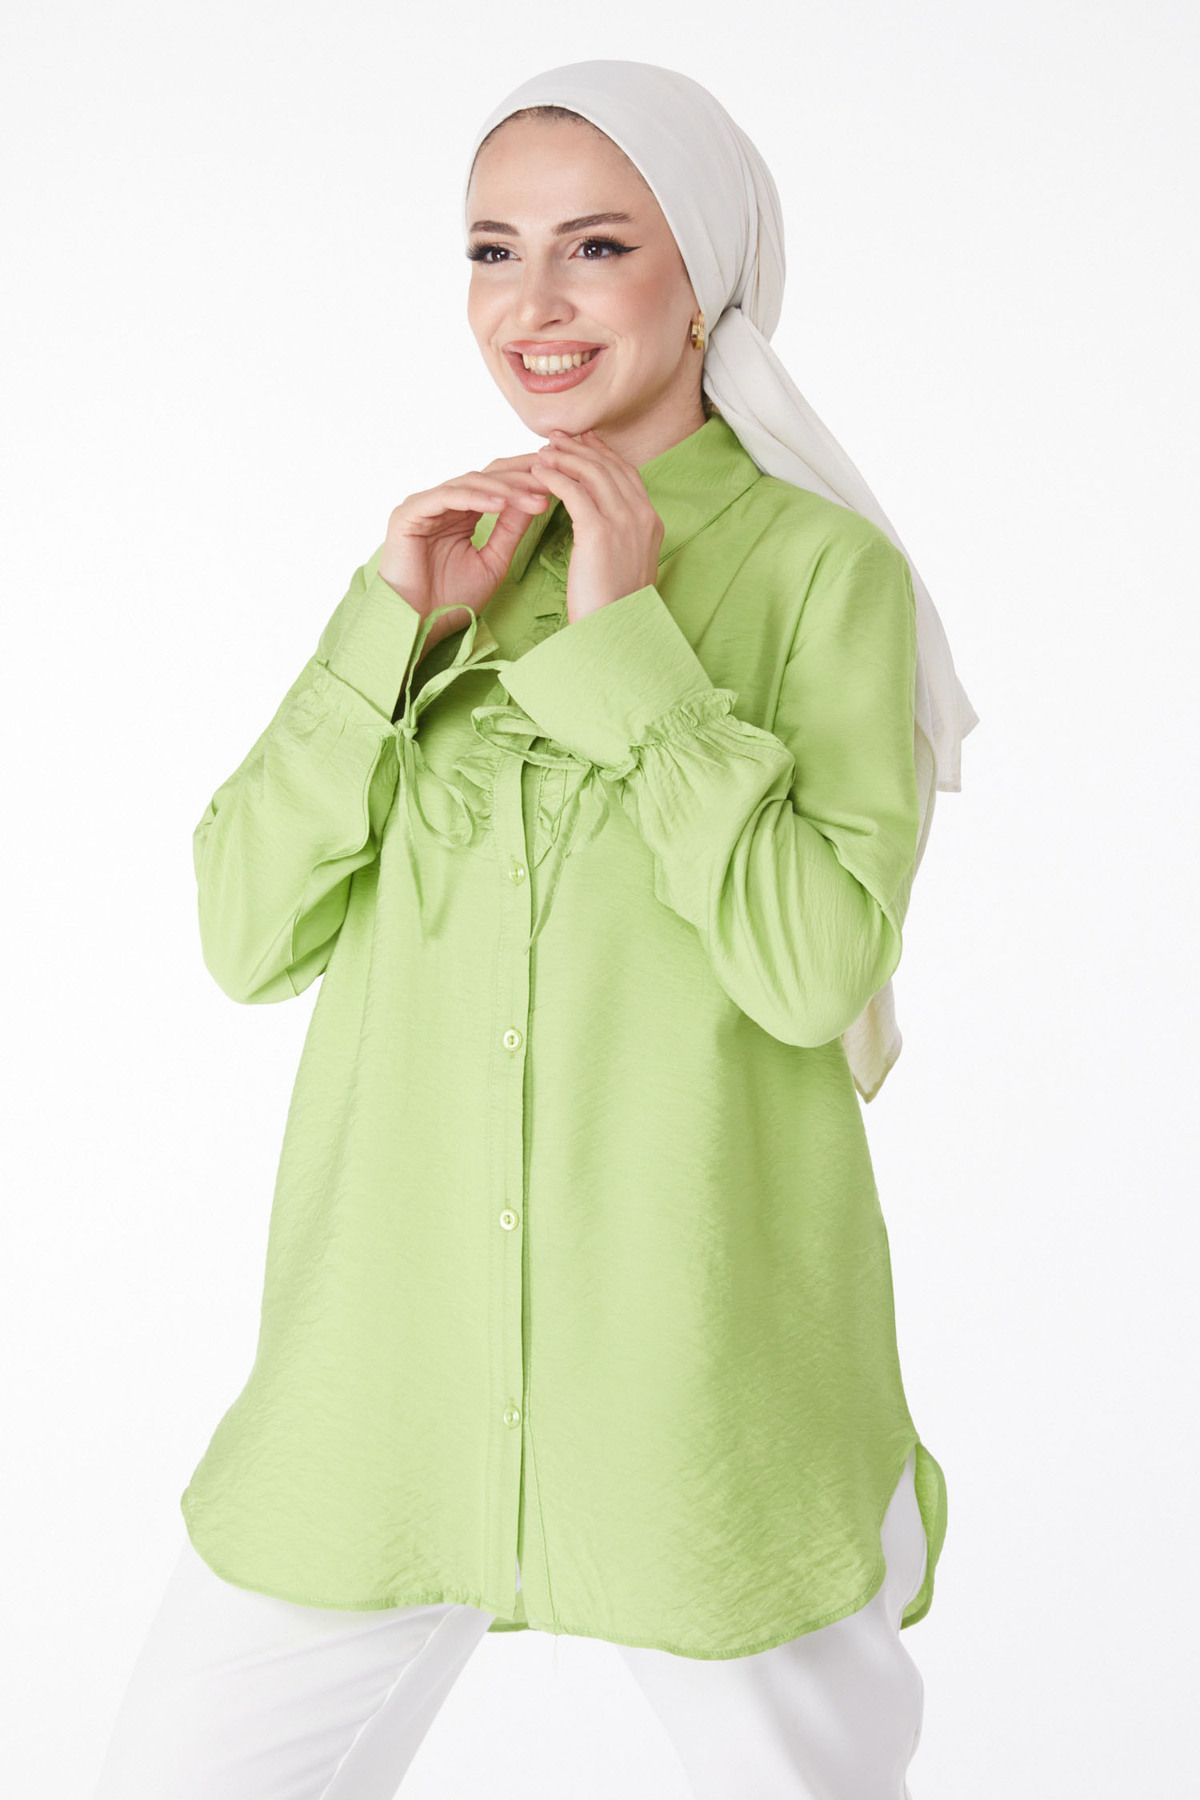 TOFİSA Düz Gömlek Yaka Kadın Yeşil Fırfırlı Gömlek - 25259